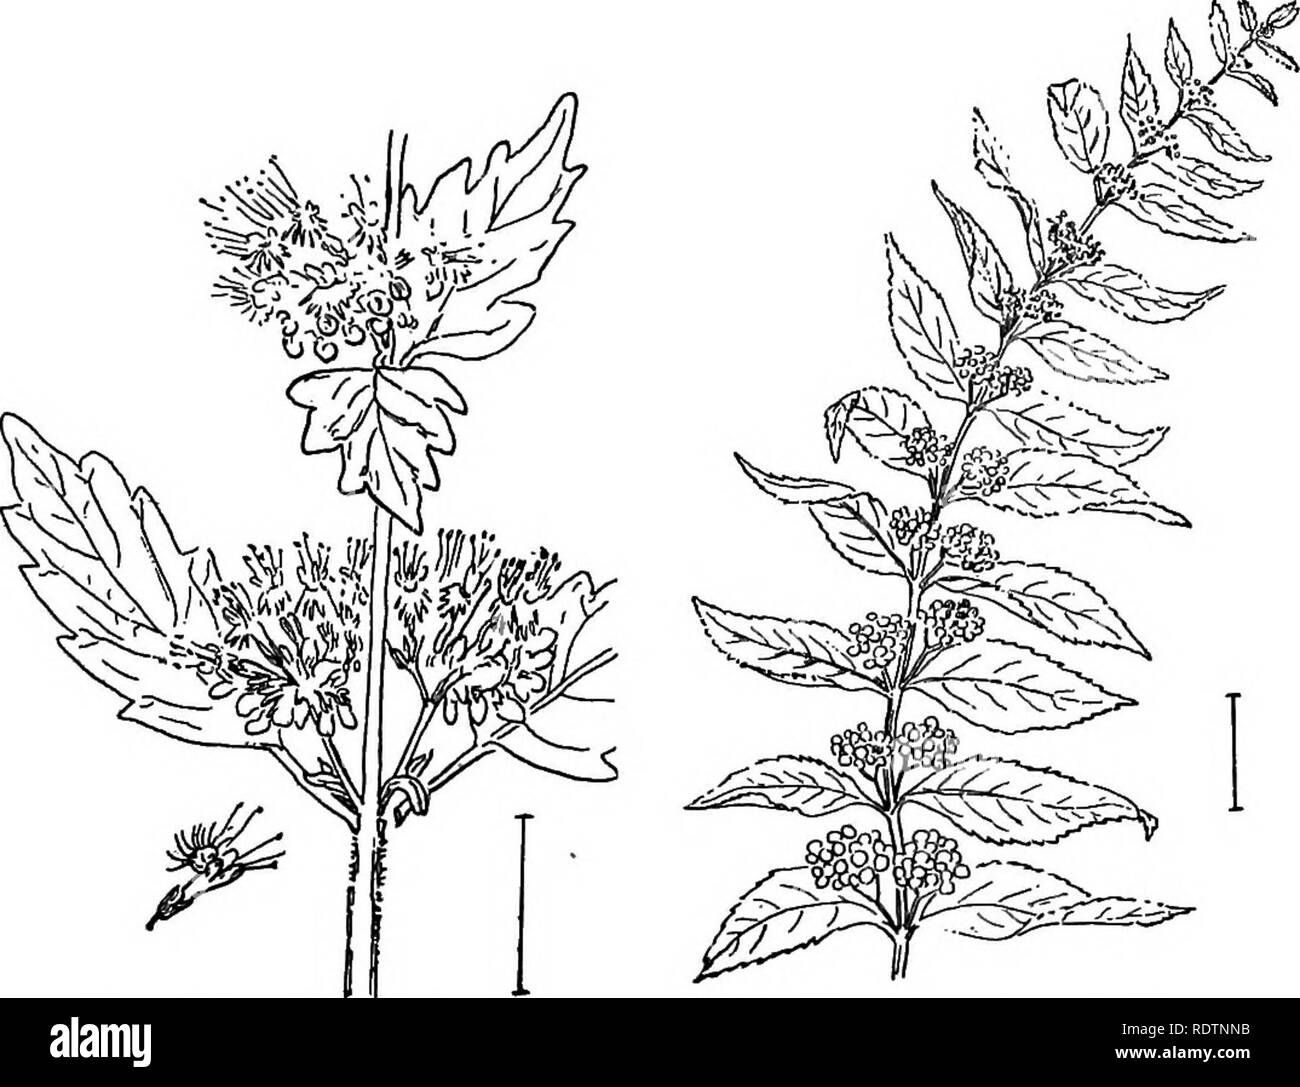 . Ziersträucher der Vereinigten Staaten (Hardy, kultiviert). Sträucher. VITEX 289 tief eingekerbte Blätter, und Axillären Cluster von Blau (oder weißen) Blumen in angepirscht Clustern. Die Blätter sind 2 bis 3 cm lang. Die Blüten haben einen 5-flügeligen schräg-umrandete Grenze und 4 hervorstehenden Staubgefäßen. Die Frucht der SEPA-Preise in 4 Samen - wie nutlets. (Genannt "Blau" Spieea" durch die Baumschule - Männer.) [Twig Stecklinge; Samen.] Callic 4 Rpa. Die Callicaepas sind gegenüber-leaved Sträucher, mit Achsel-lary Cluster von kleinen, meist blauen Beeren, die auf hell bleiben. Abb. 502. - Blau' Spirea." Bild. 503. - Amerikanische Callicarpa. thr Stockfoto